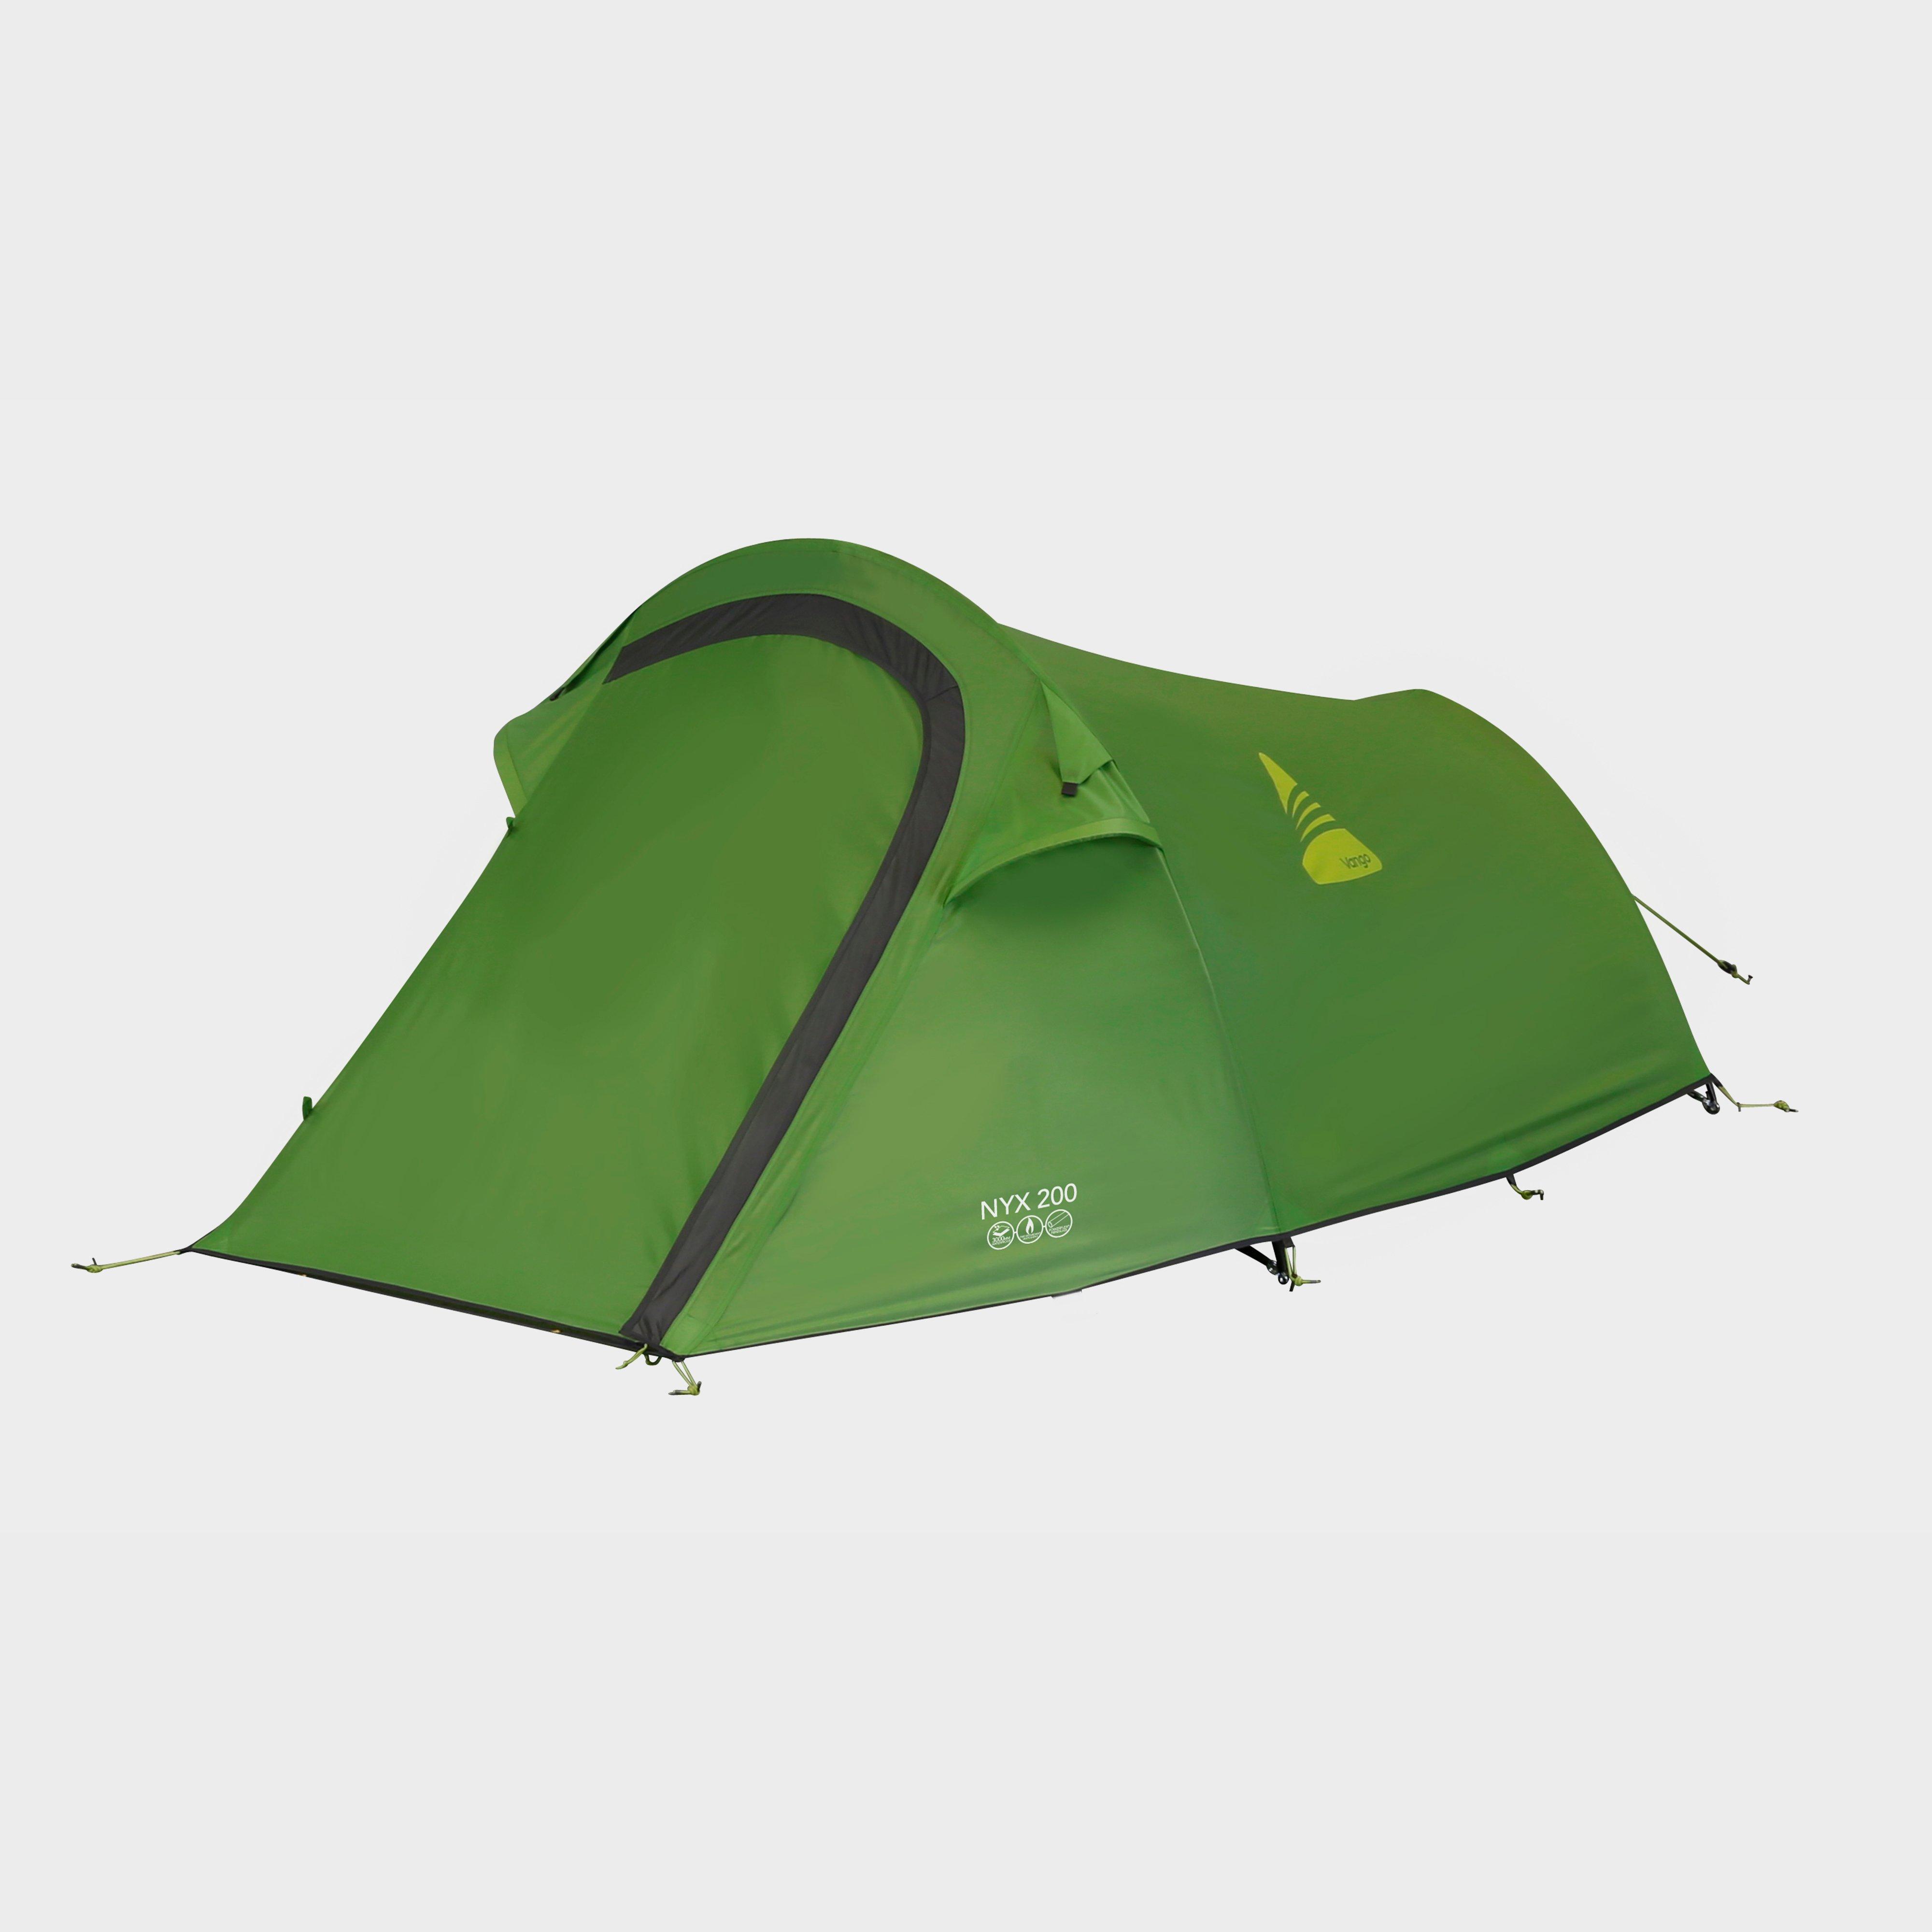 Vango Vango Nyx 200 Tent - Green, Green